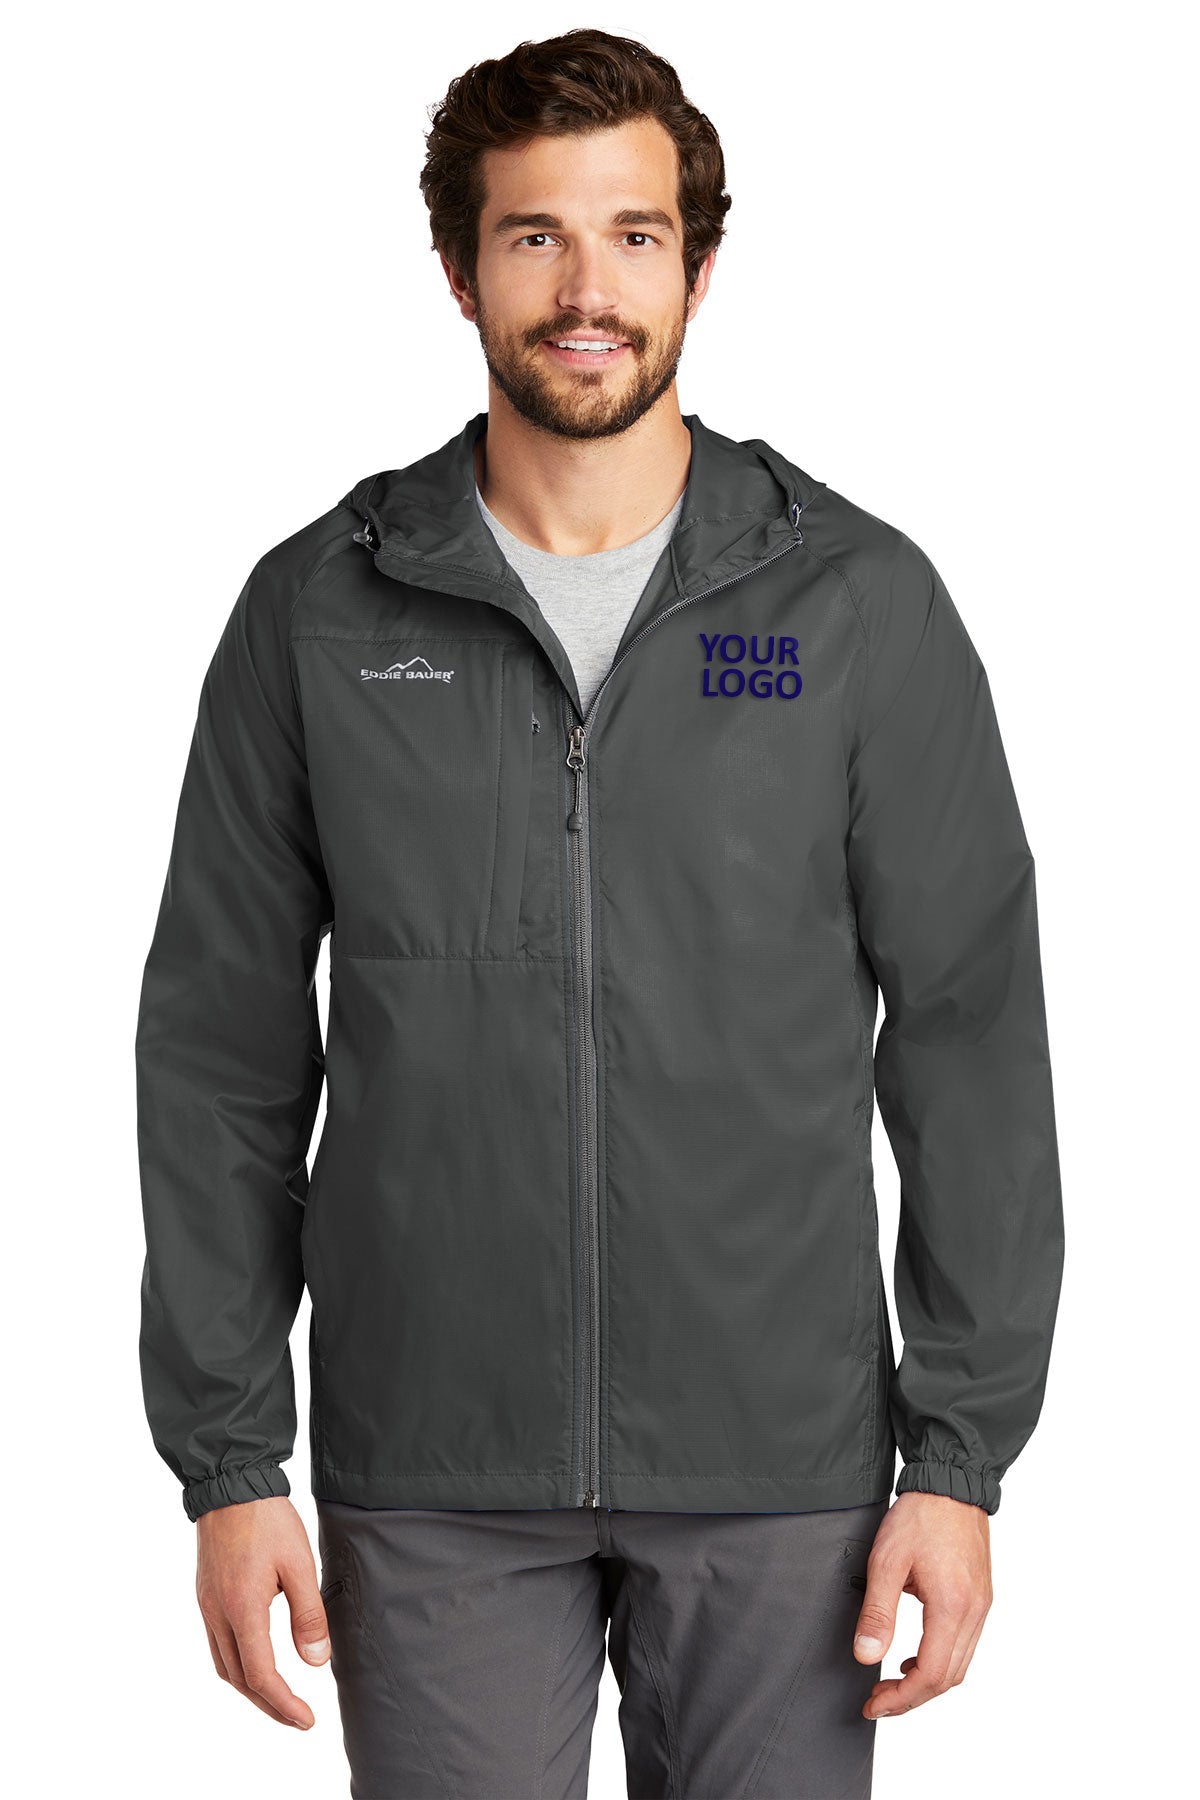 Eddie Bauer Grey Steel EB500 custom logo jackets